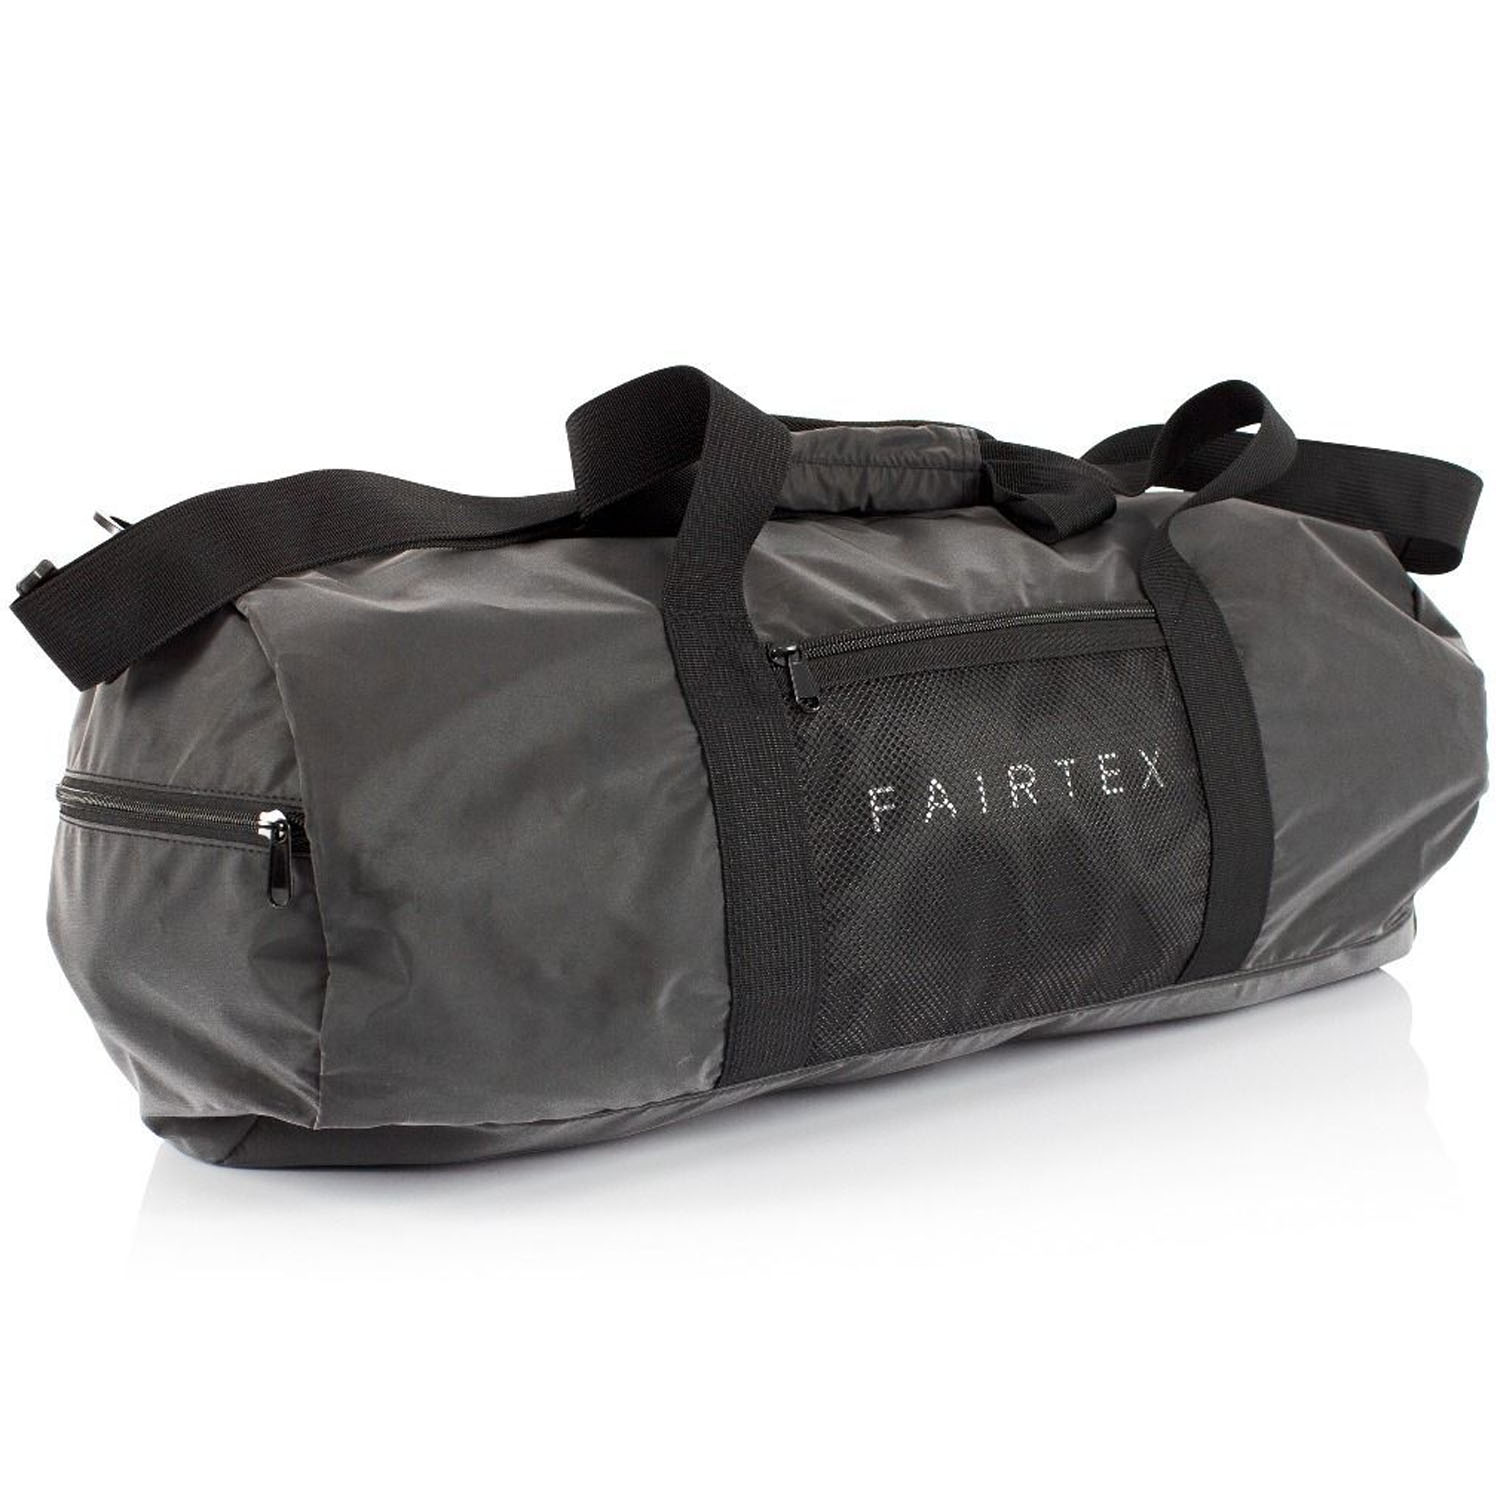 Fairtex Gear Bag, BAG14, Duffel